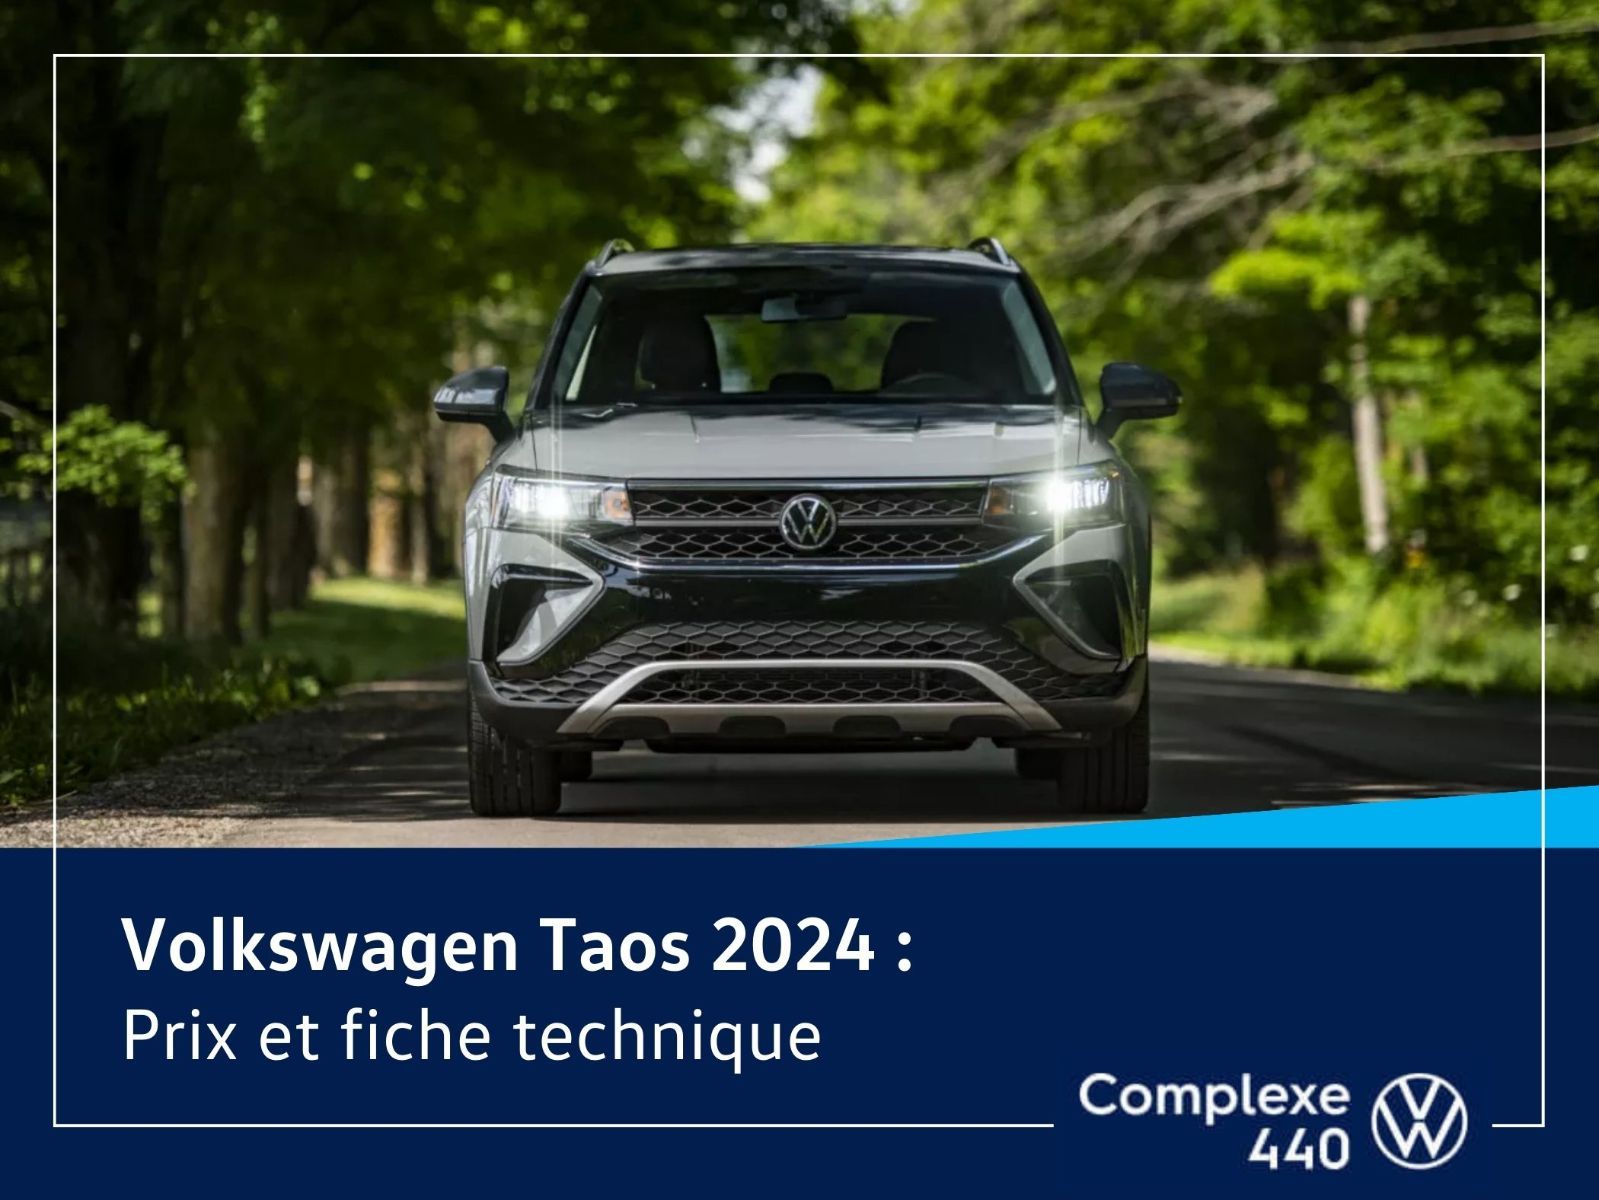 image entête - Volkswagen Taos 2024 Prix et fiche technique